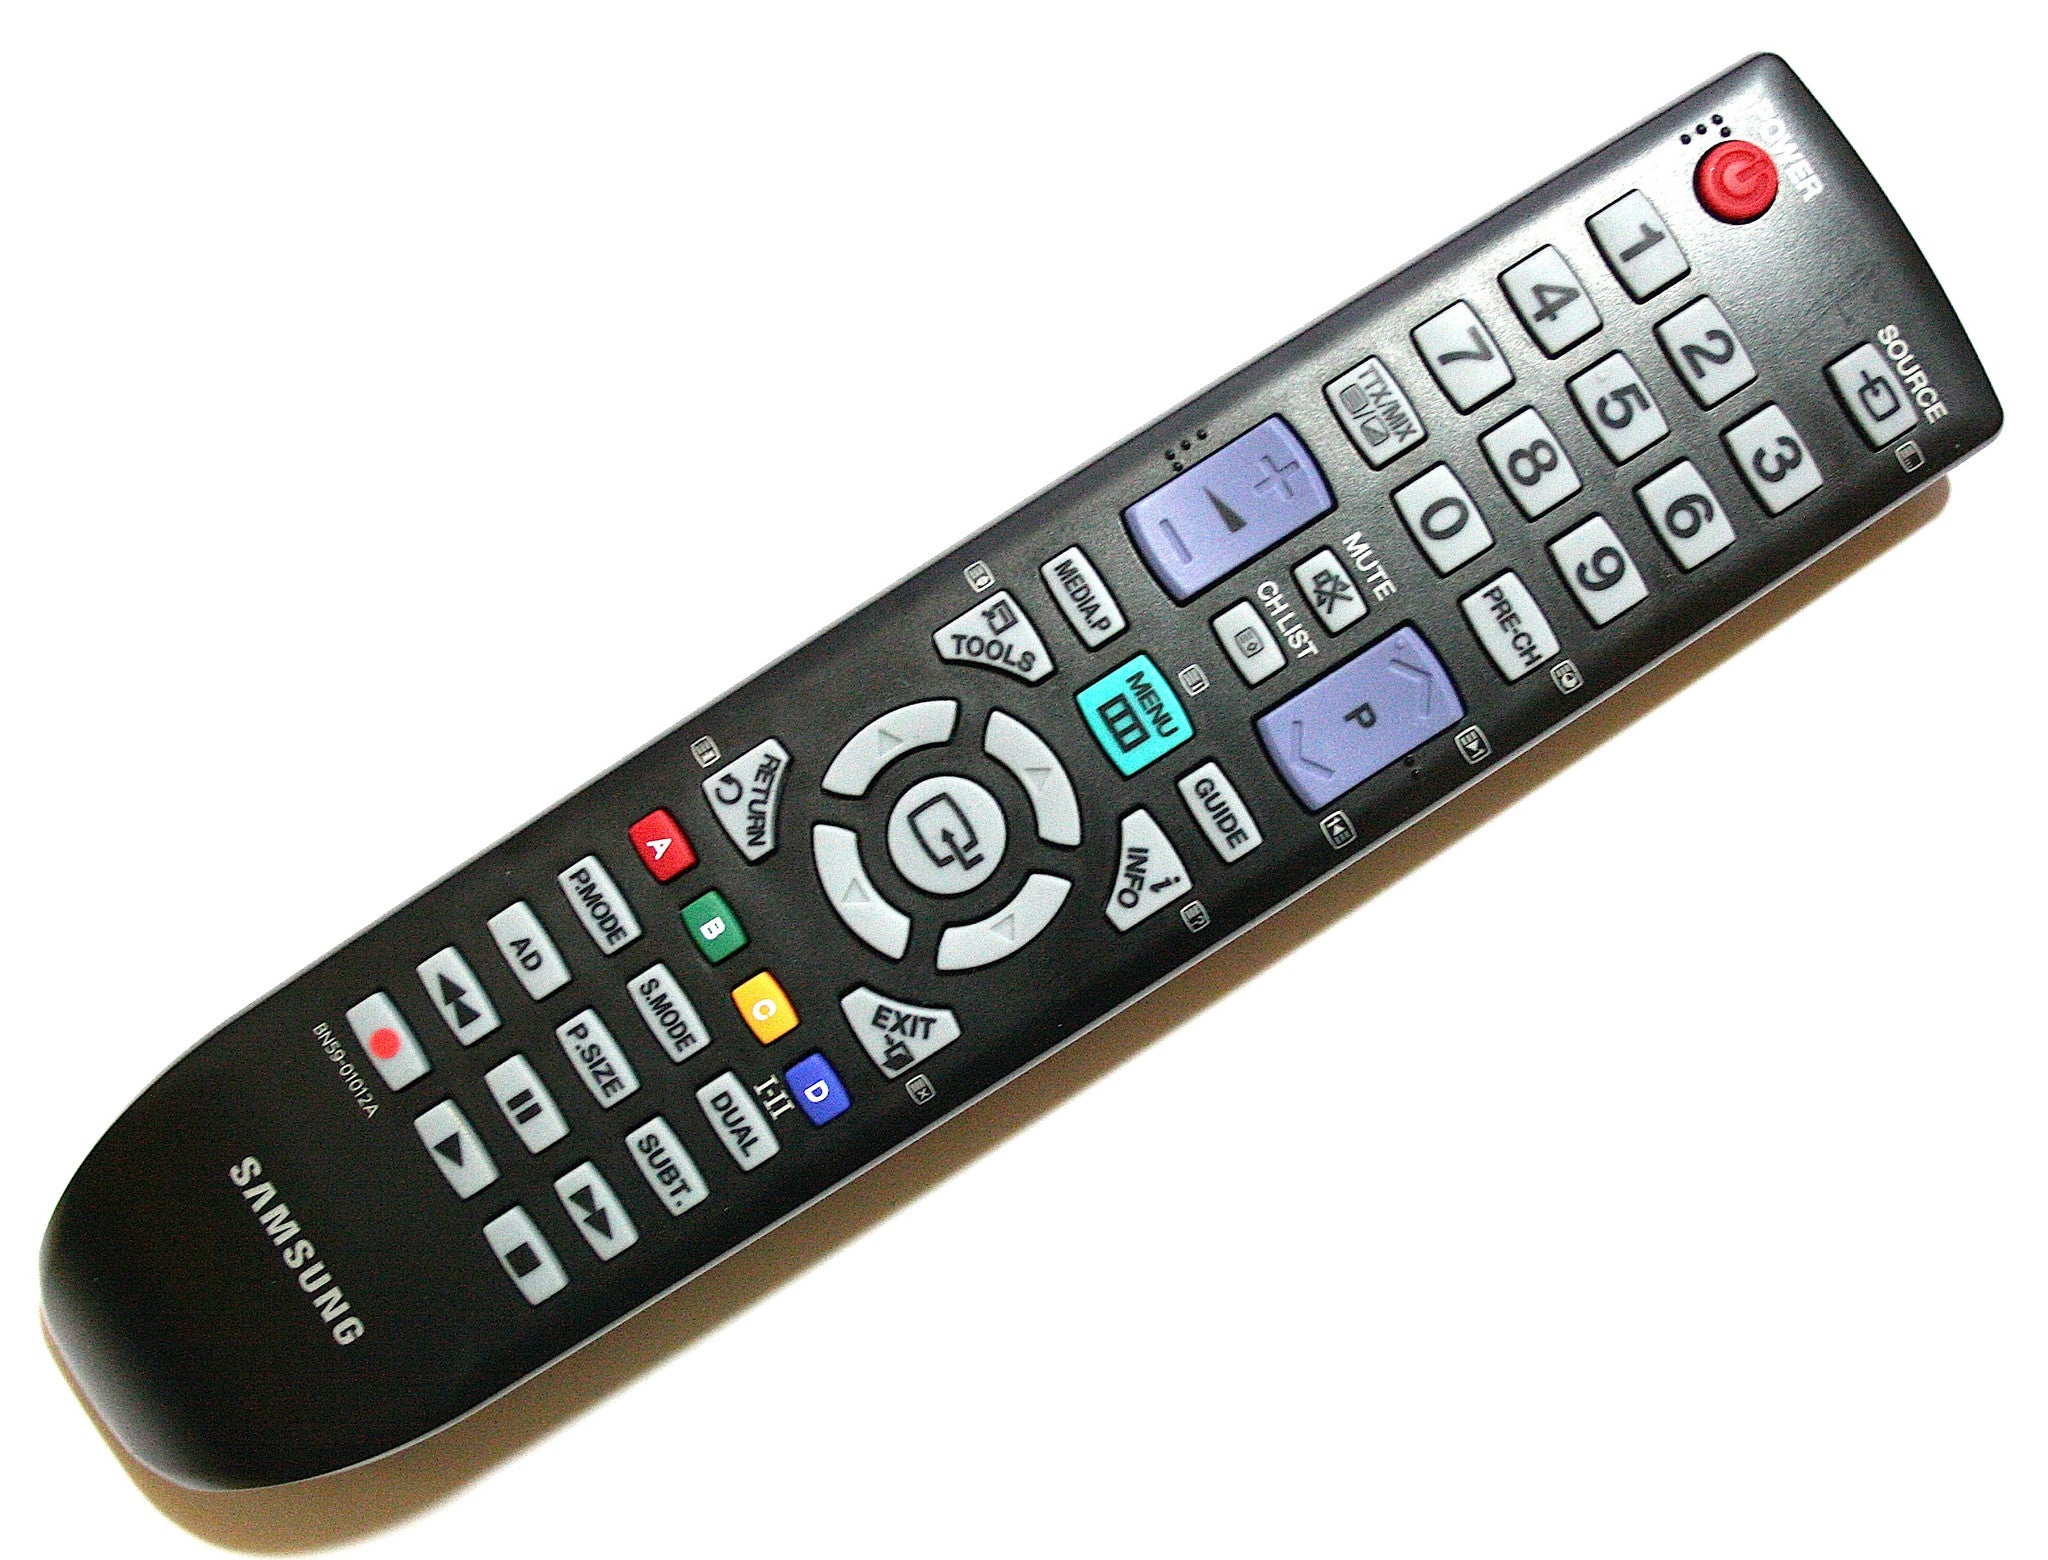 Связь пульта с телевизором. Bn59-01012a пульт. Samsung bn59-01012a. Пульт для телевизора Samsung bn59-01012a. Пульт Ду для телевизора самсунг 32.